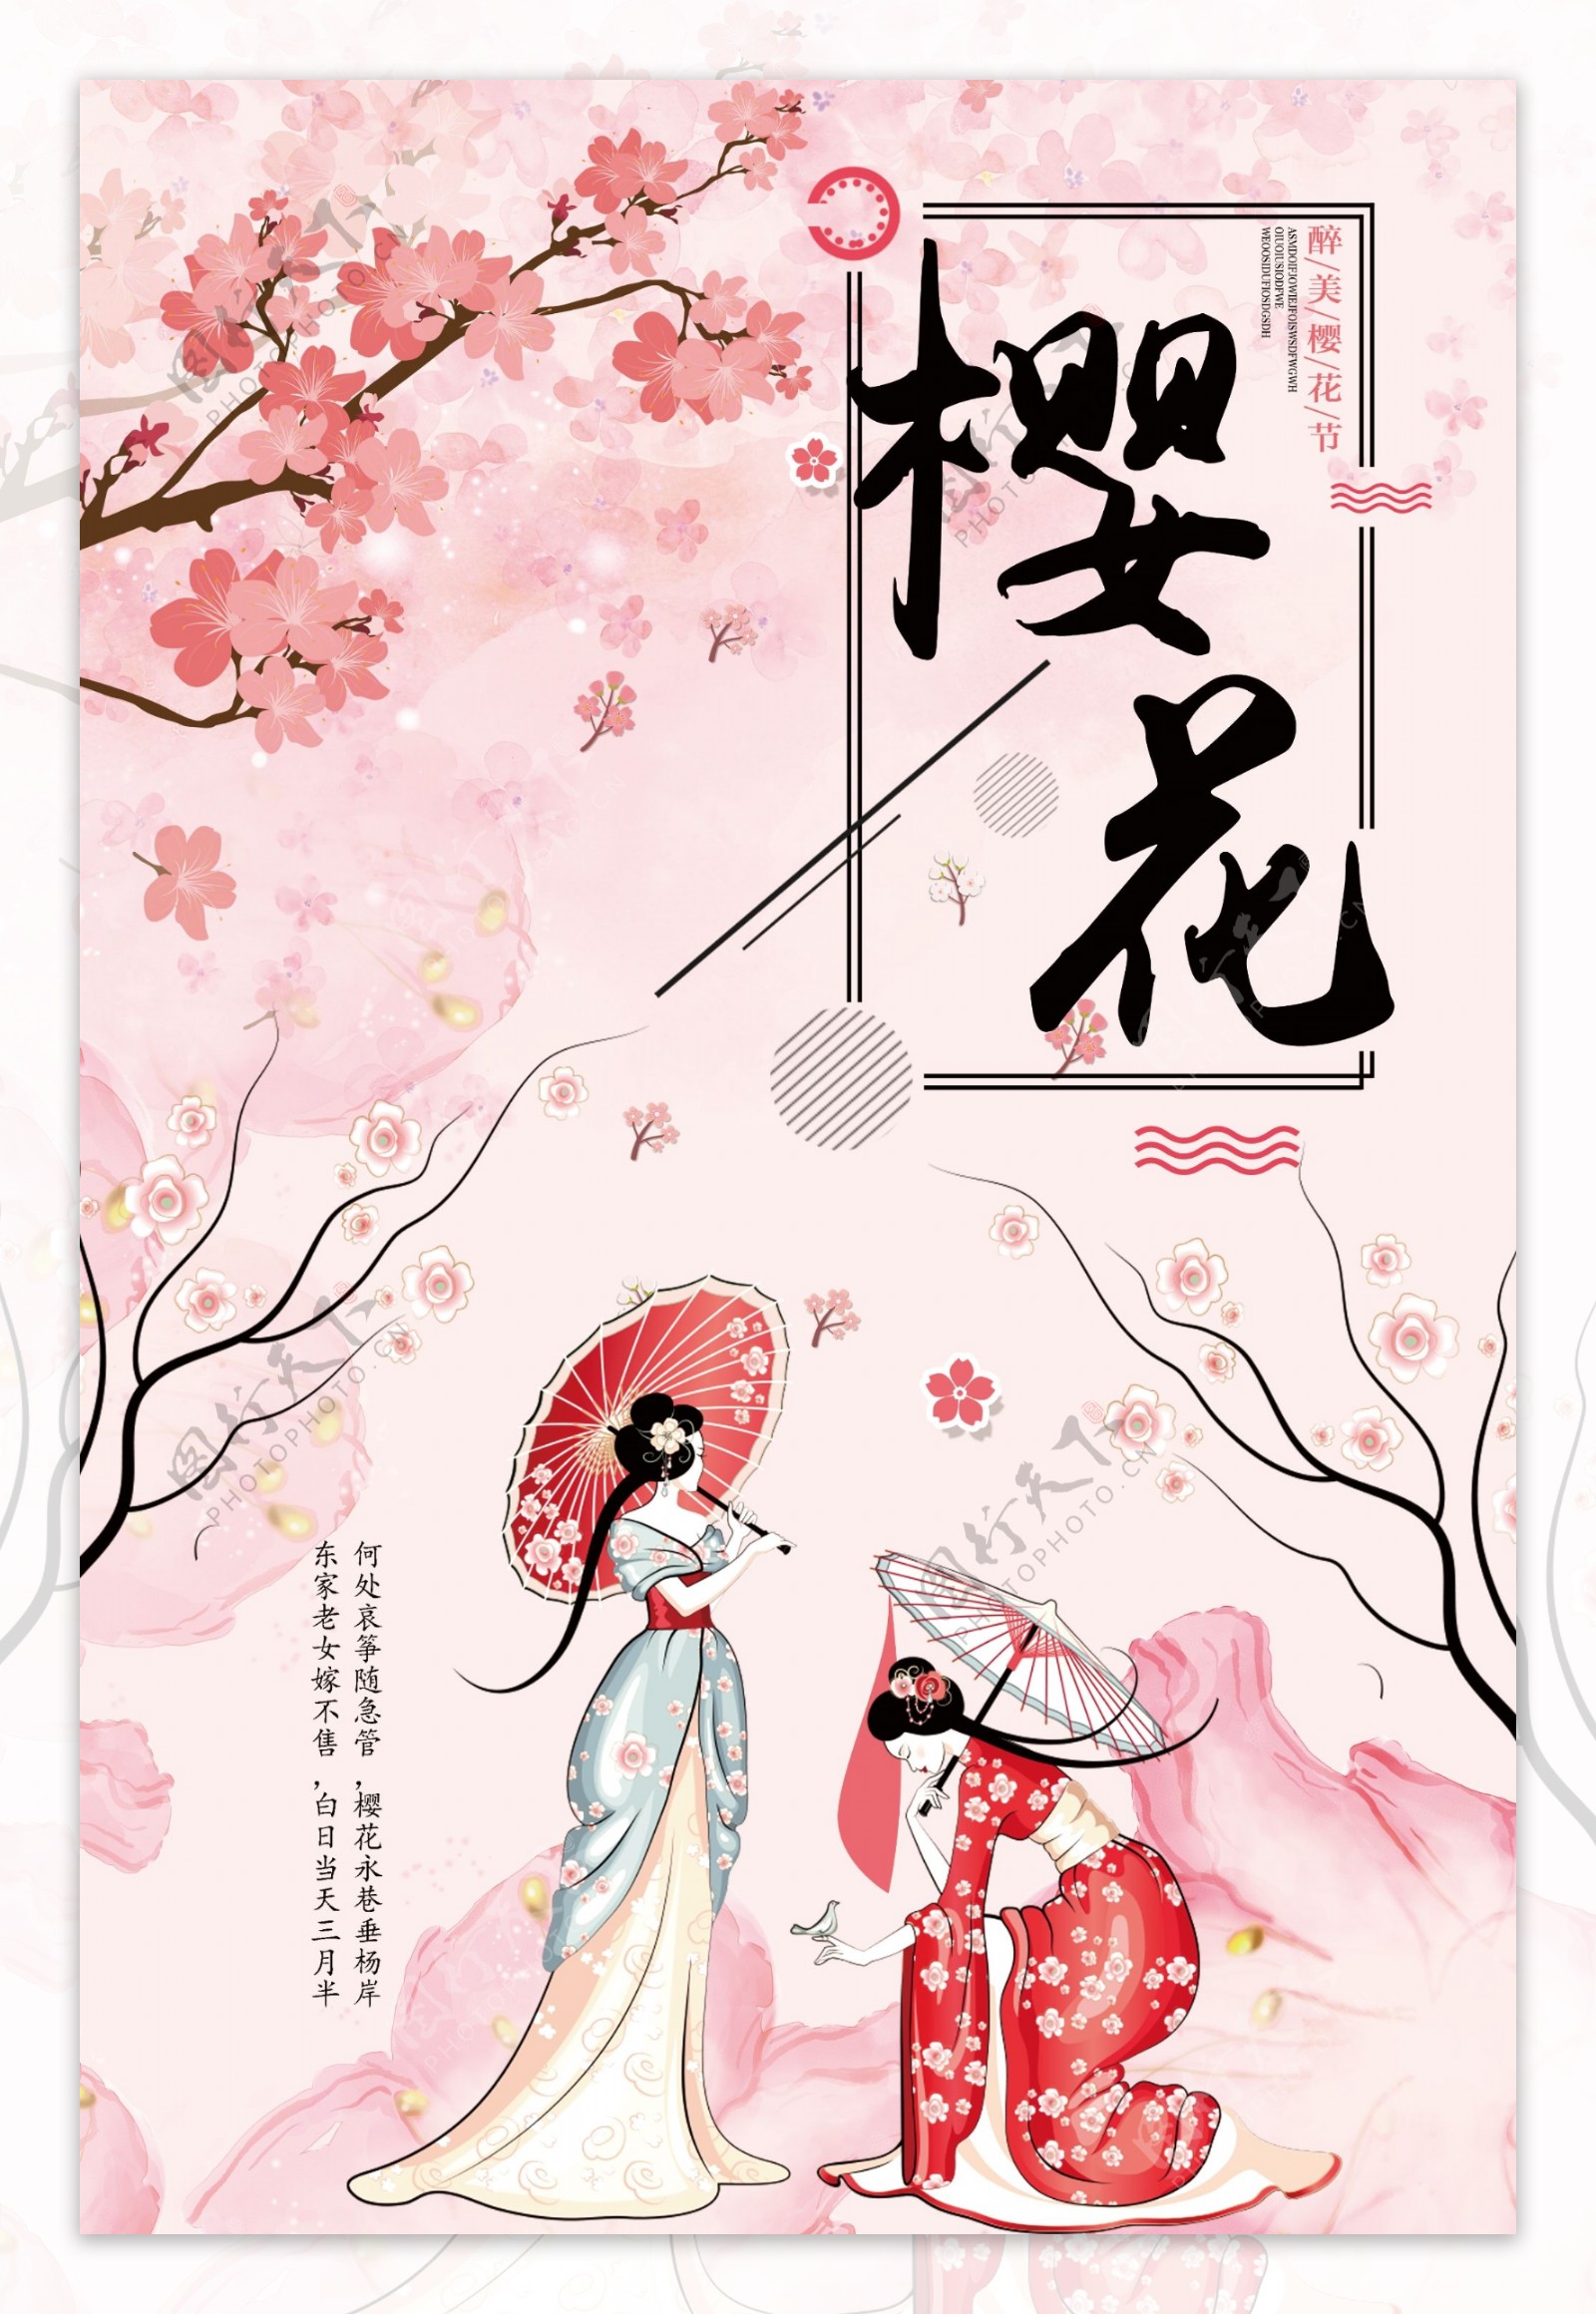 2018清新手绘风格樱花海报设计